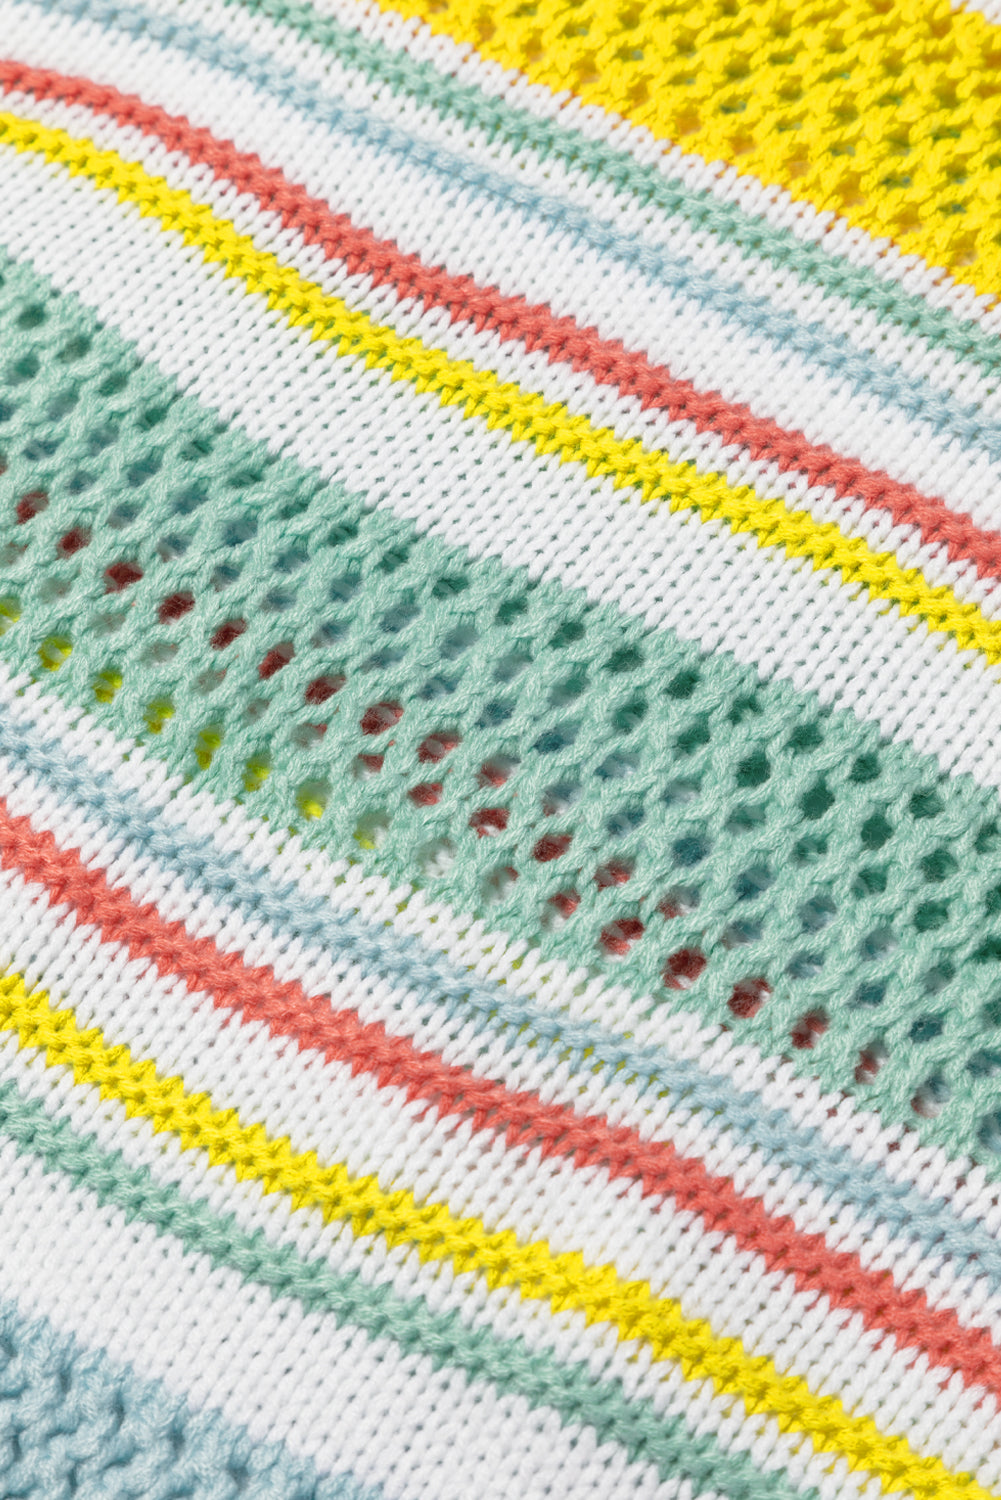 Pull multicolore à manches contrastées en tricot à rayures creuses